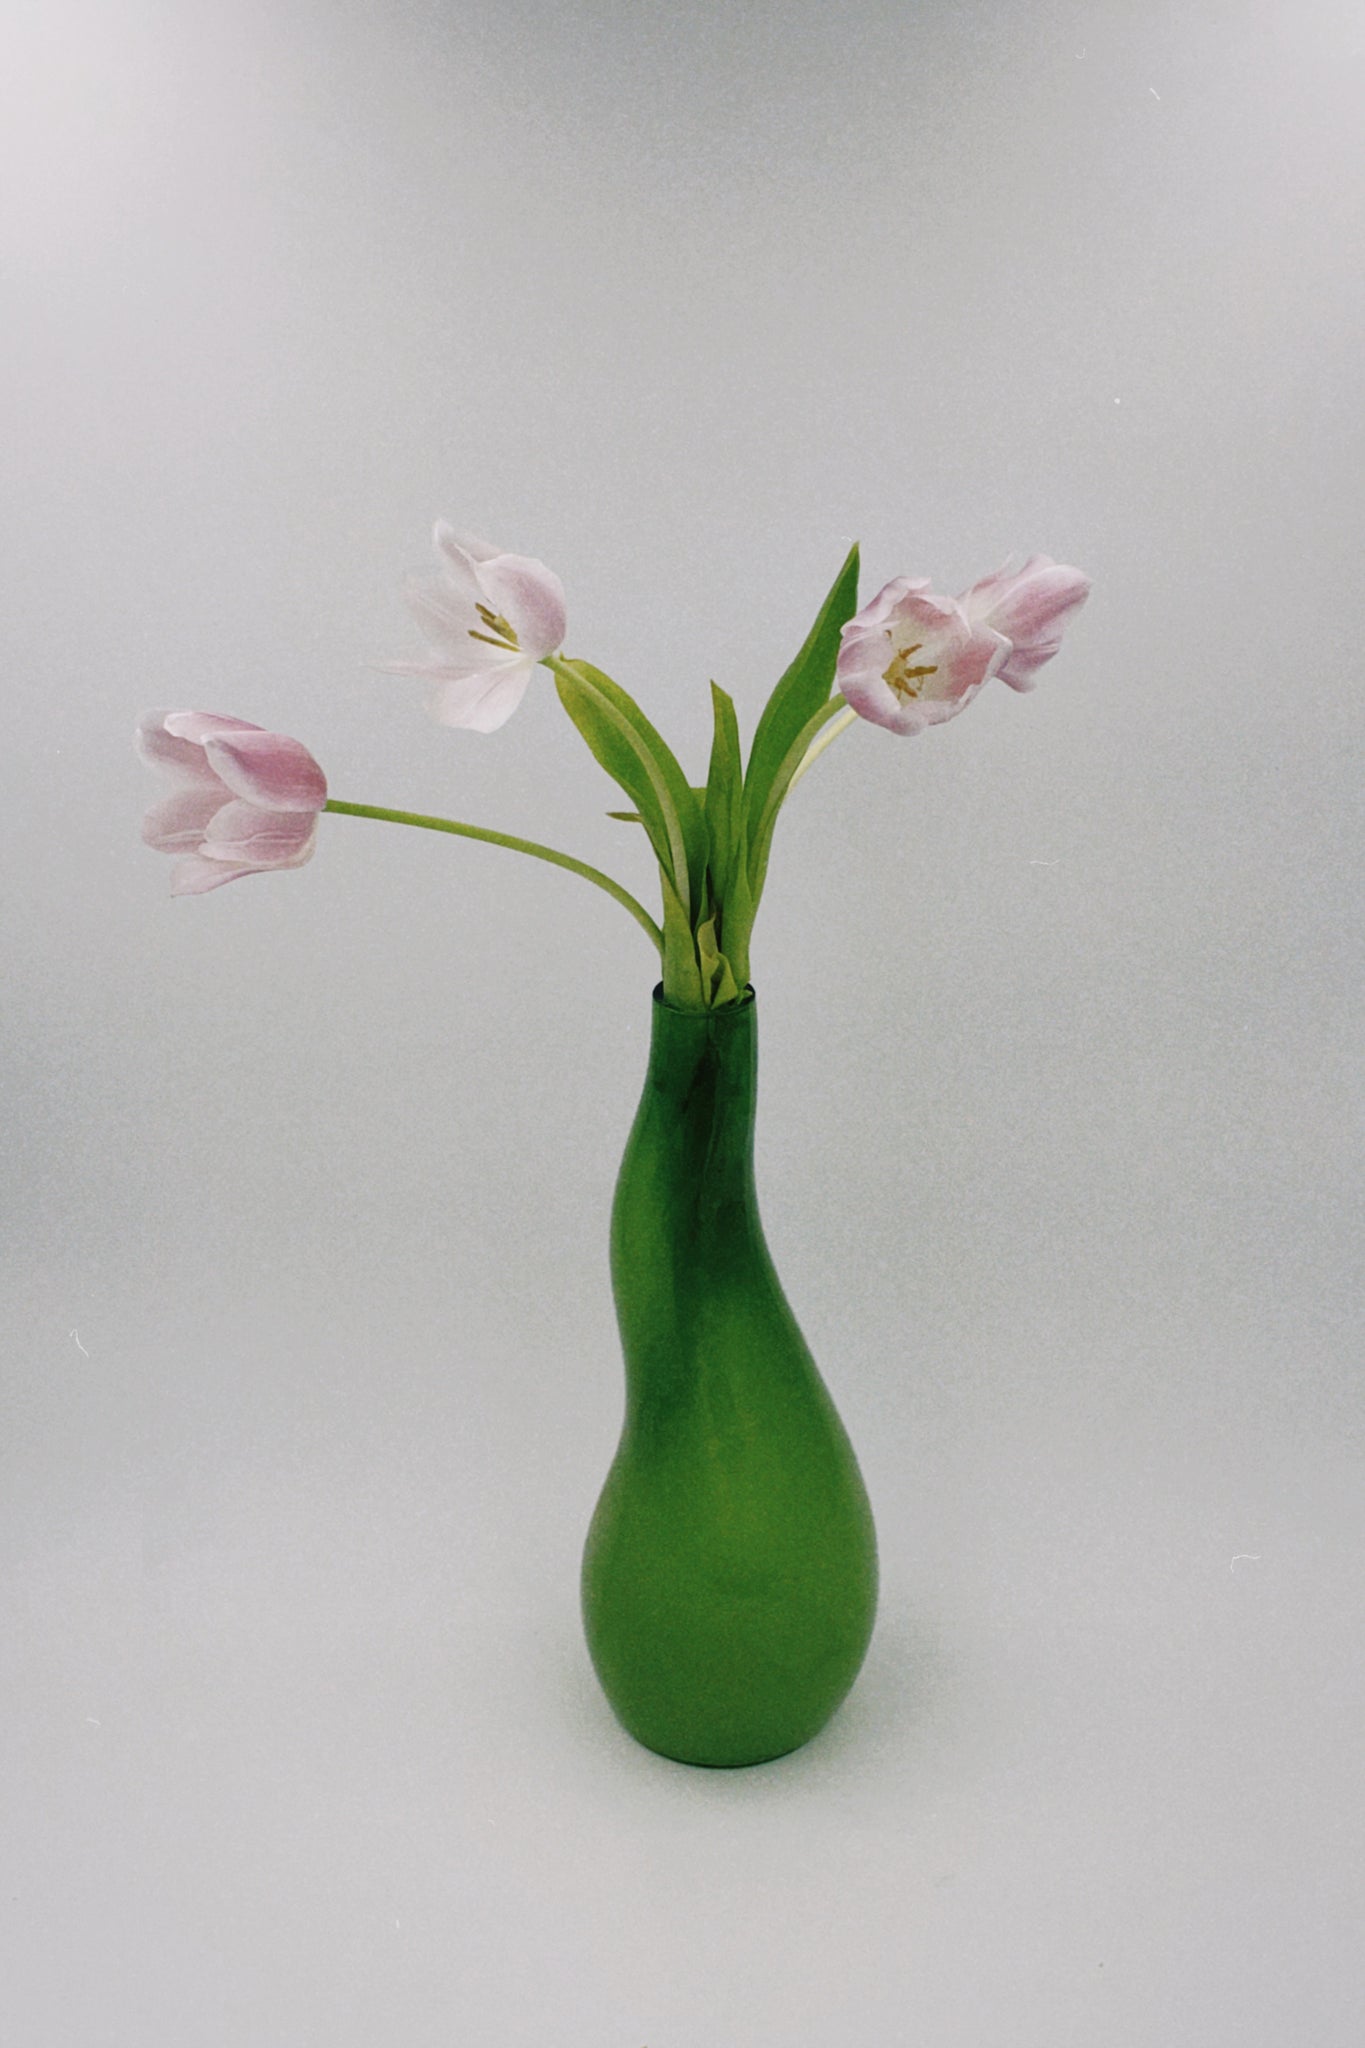 Lime Green Vase